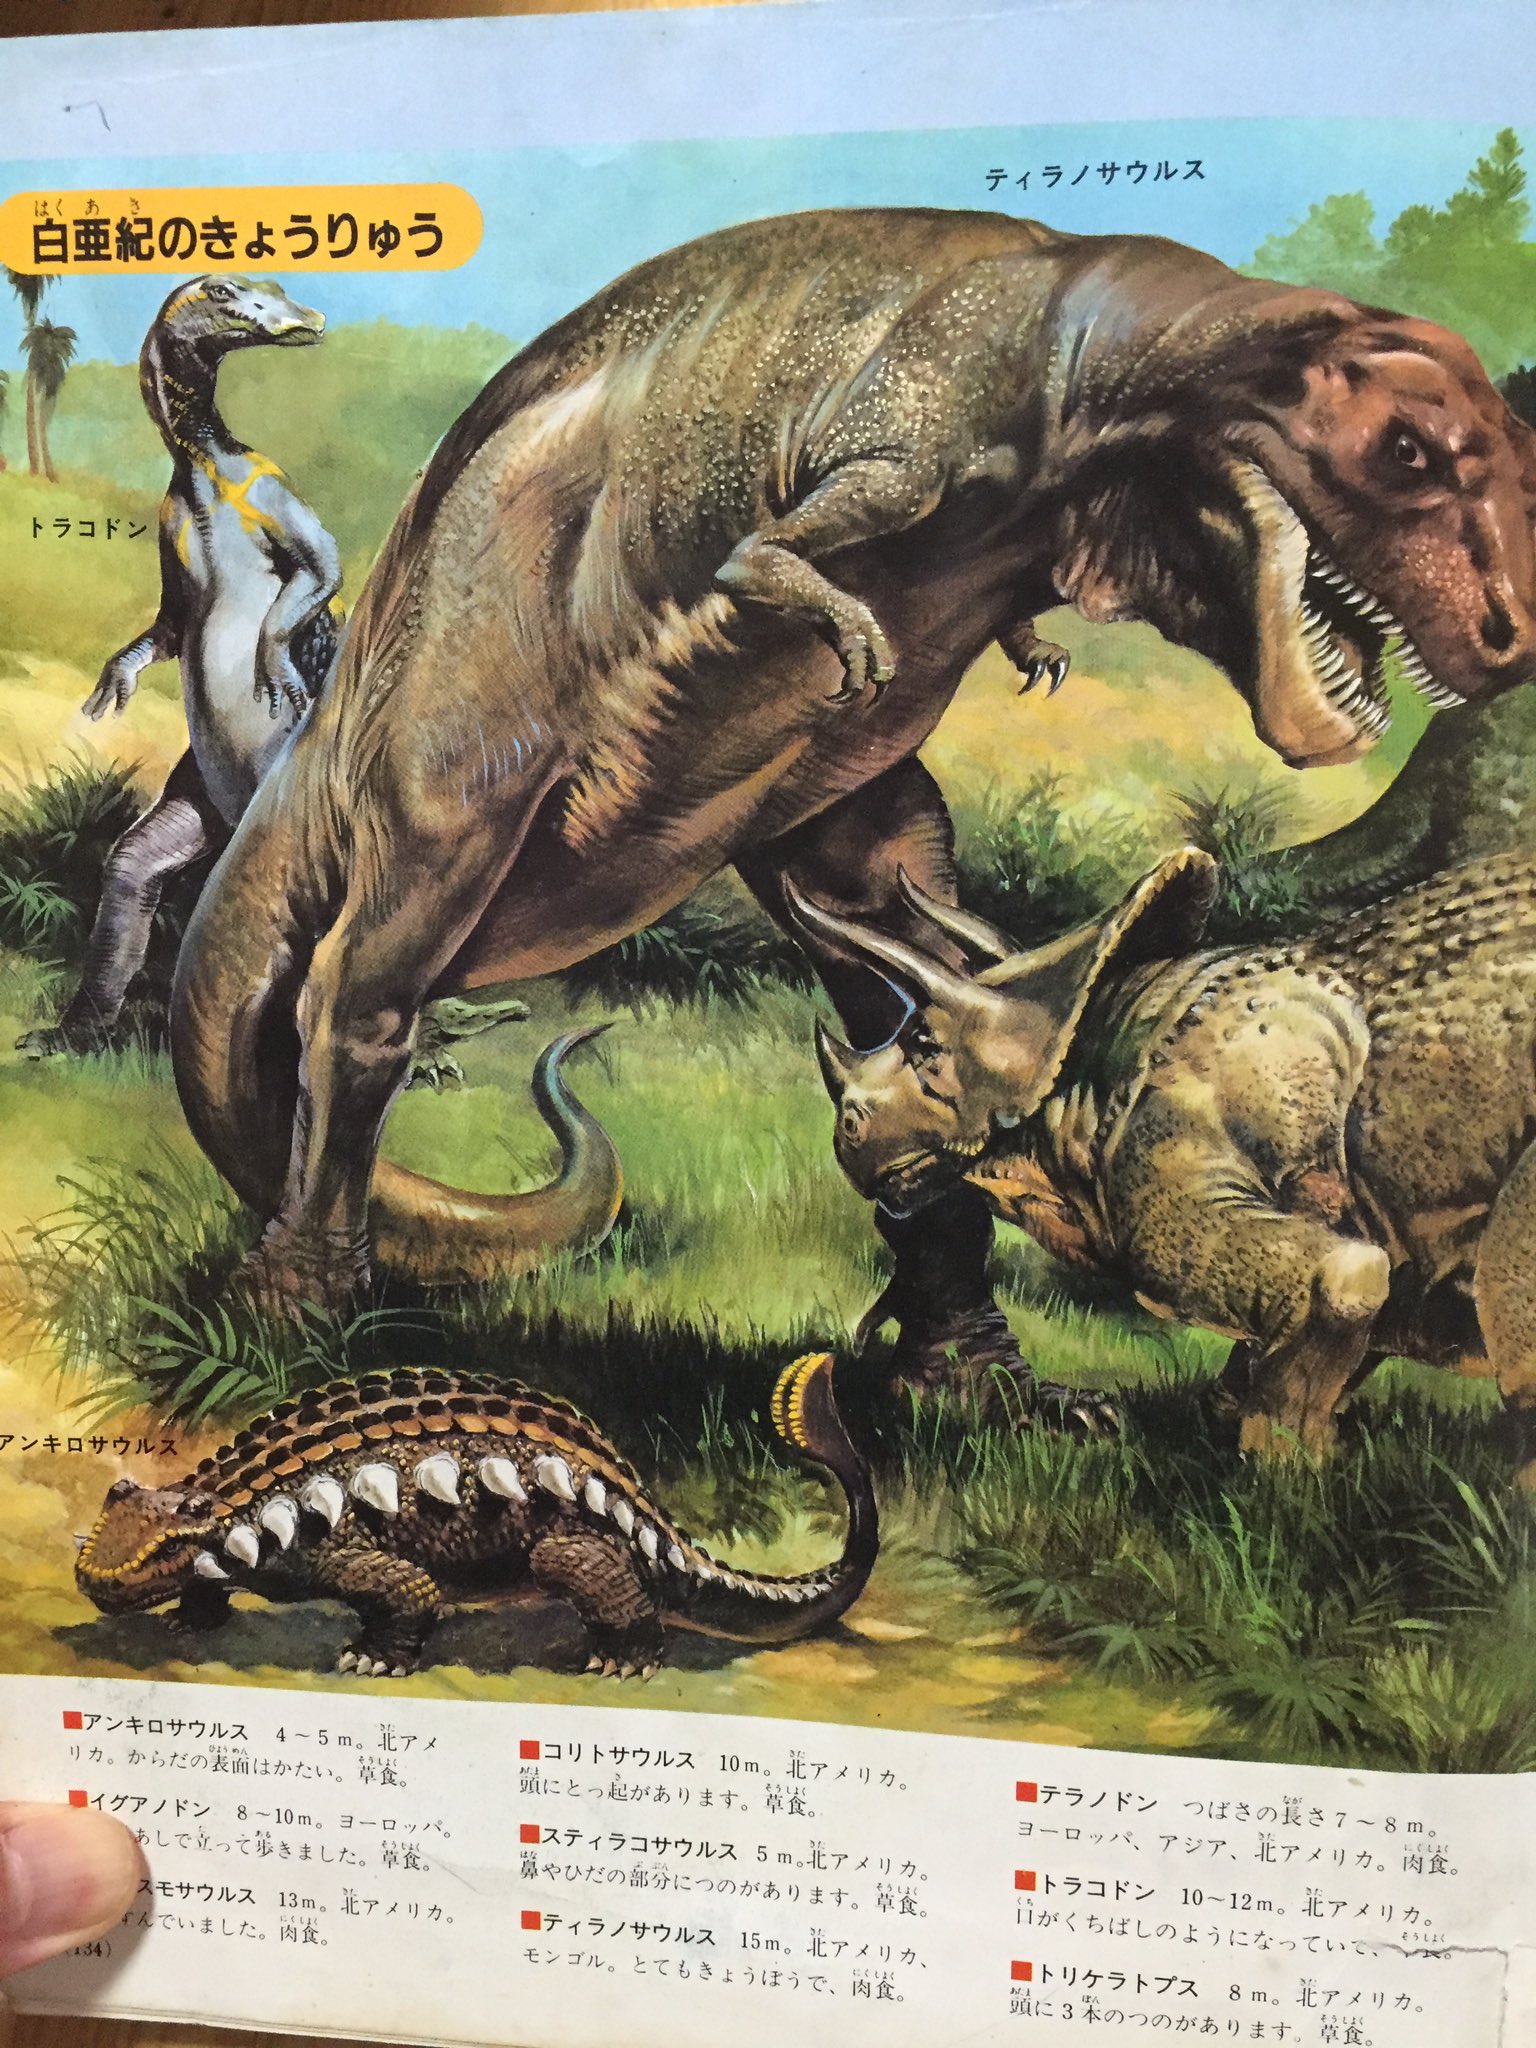 竜生九子博物館館長 子供ができて 十何年ぶりかにディズニーランドに行った時 ウエスタンリバー鉄道にいたティラノサウルスはこの直立タイプであった 思わぬ再会に私は小躍りしてしまいました こんなところにも 恐竜学の系譜の名残があったのです